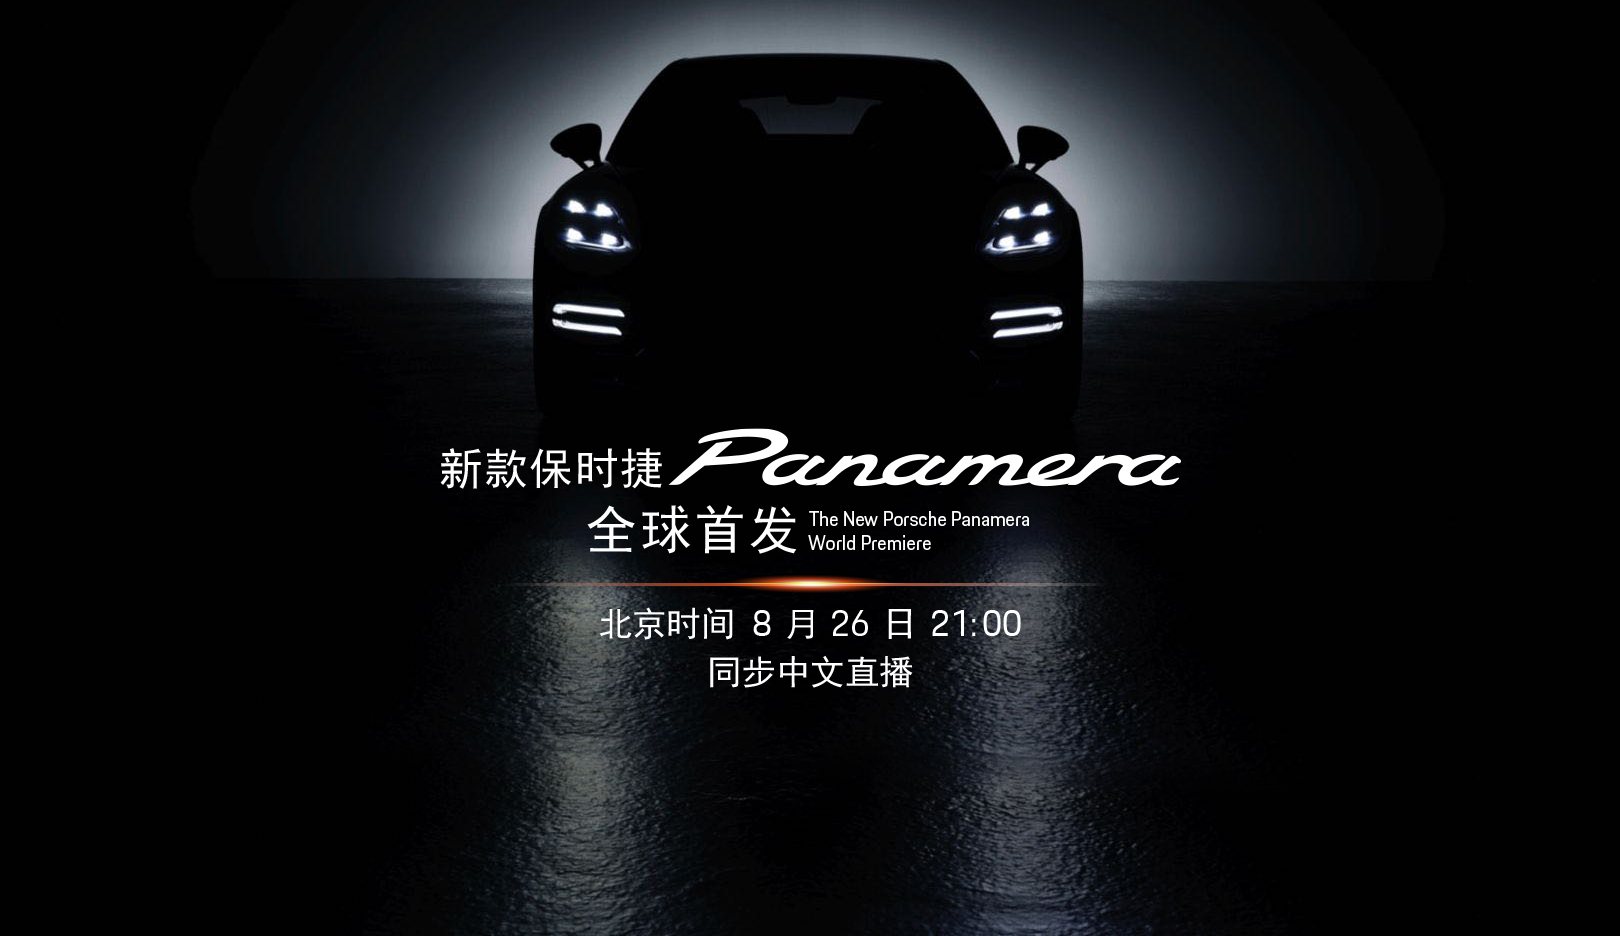 保时捷Panamera迎来中期改款 8月26日启动全球首发直播